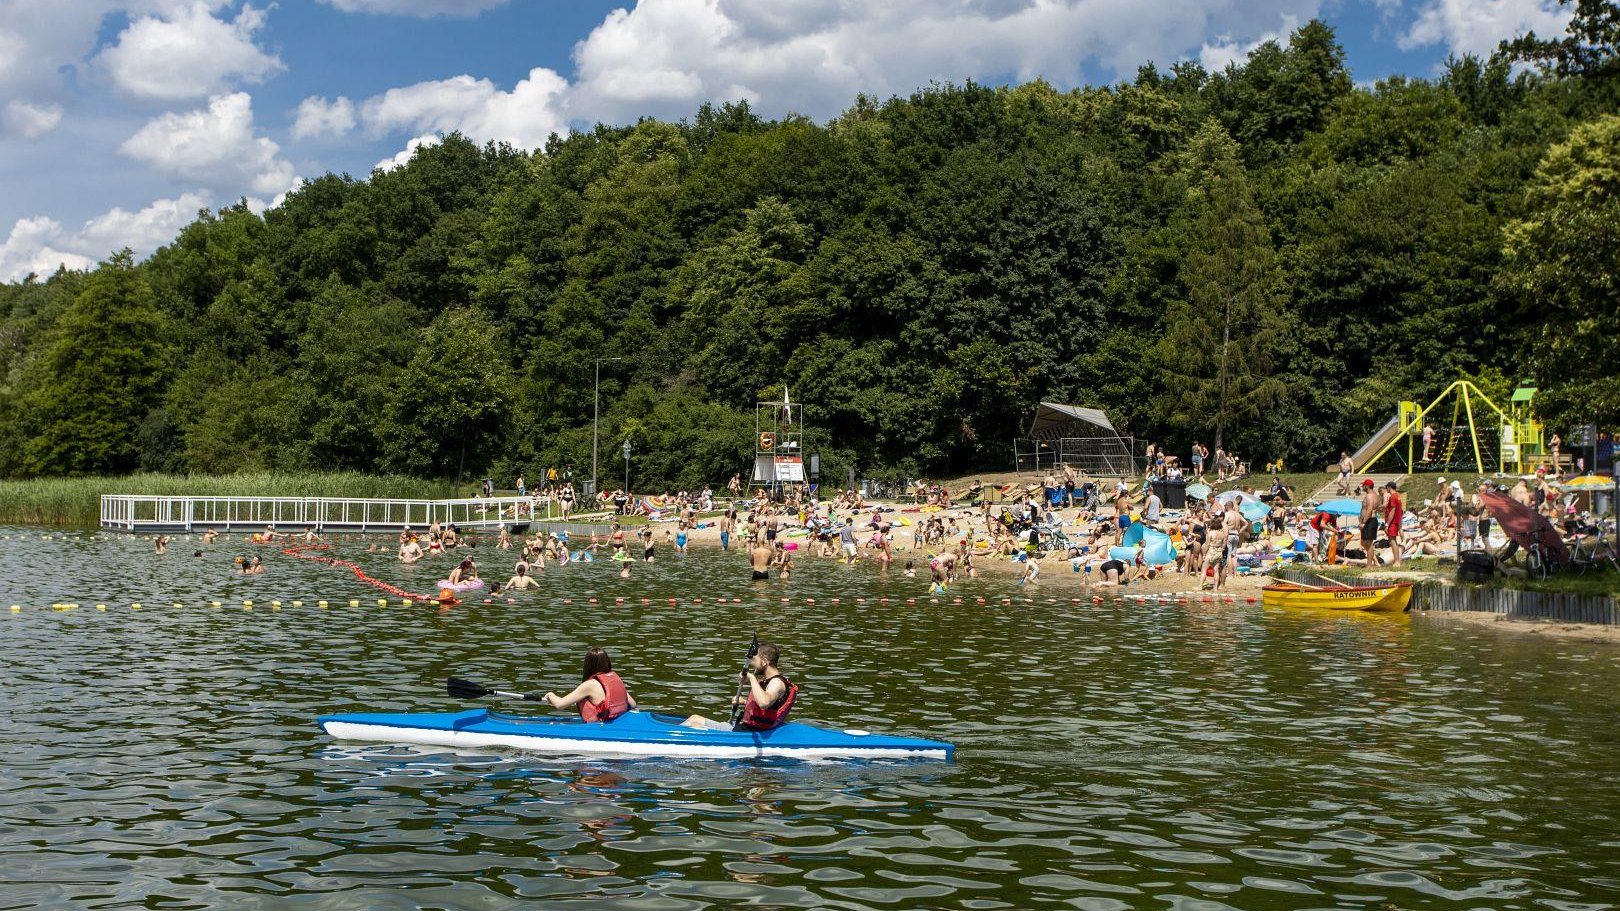 Zdjęcie przedstawia tłum ludzi na plaży i w wodzie.